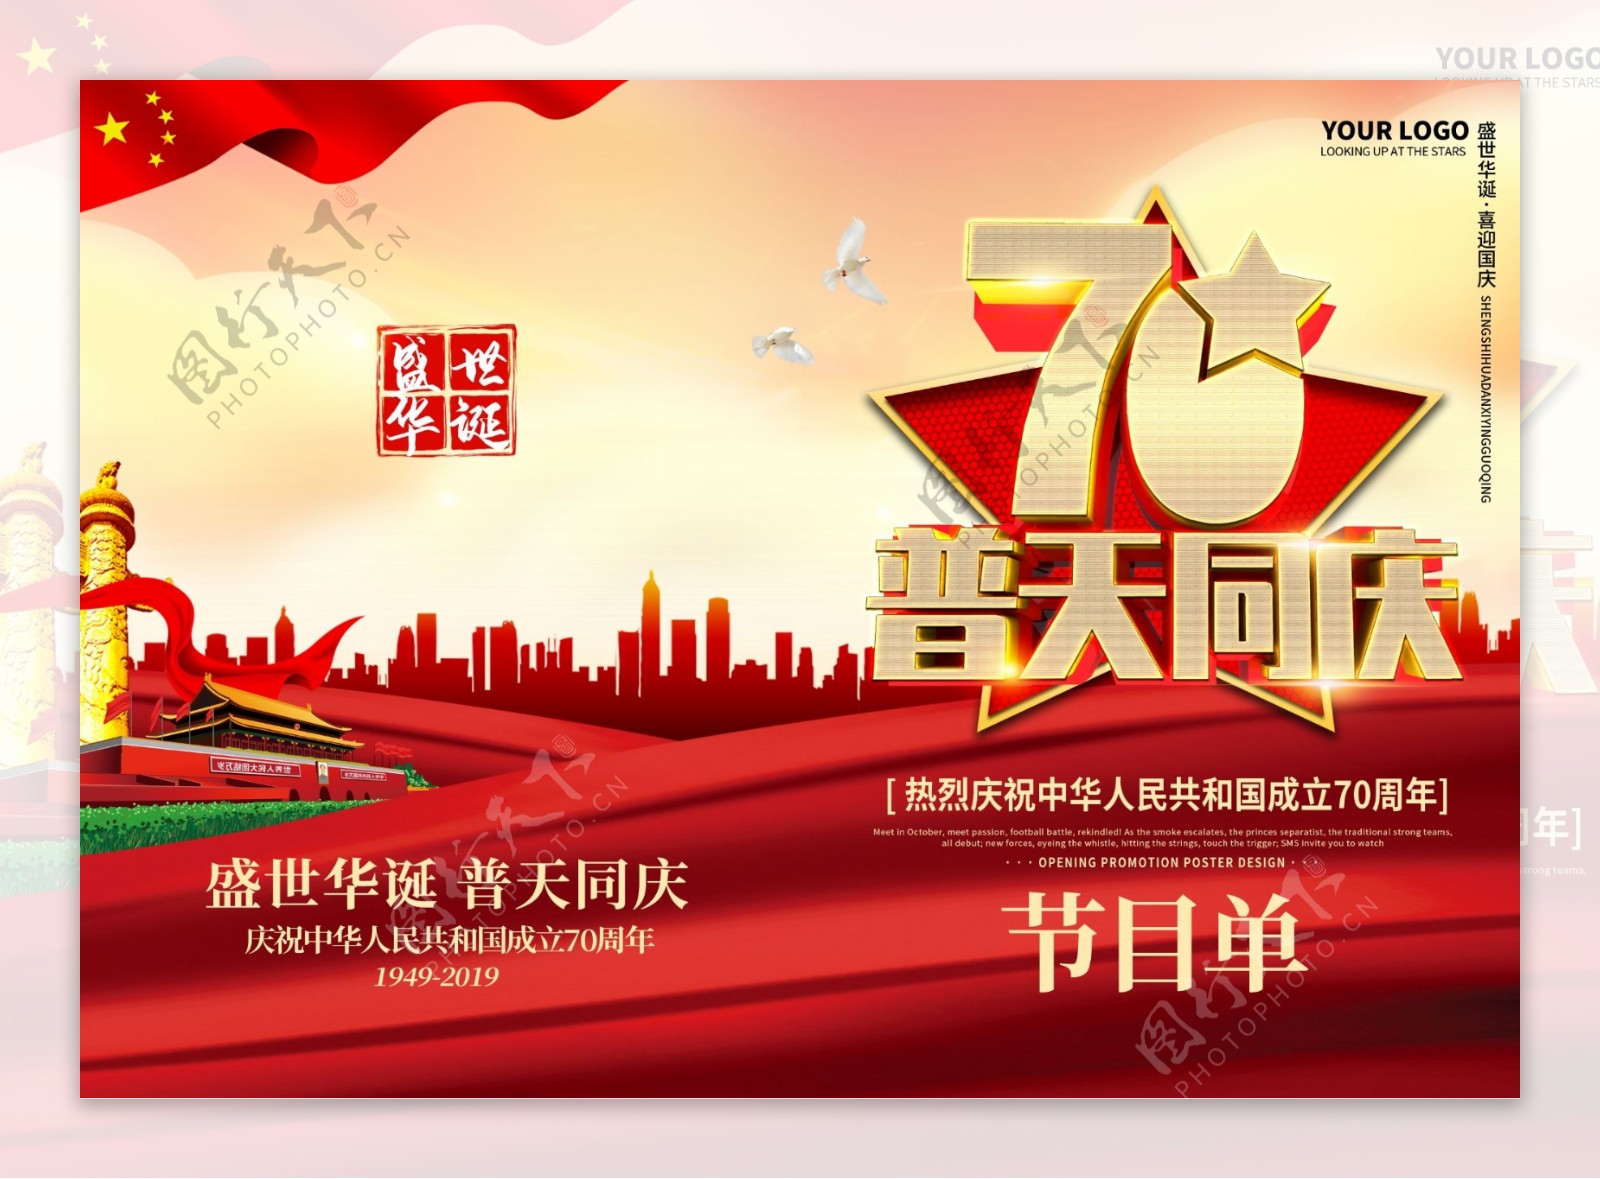 红色新中国成立70周年文艺晚会节目单封面模板